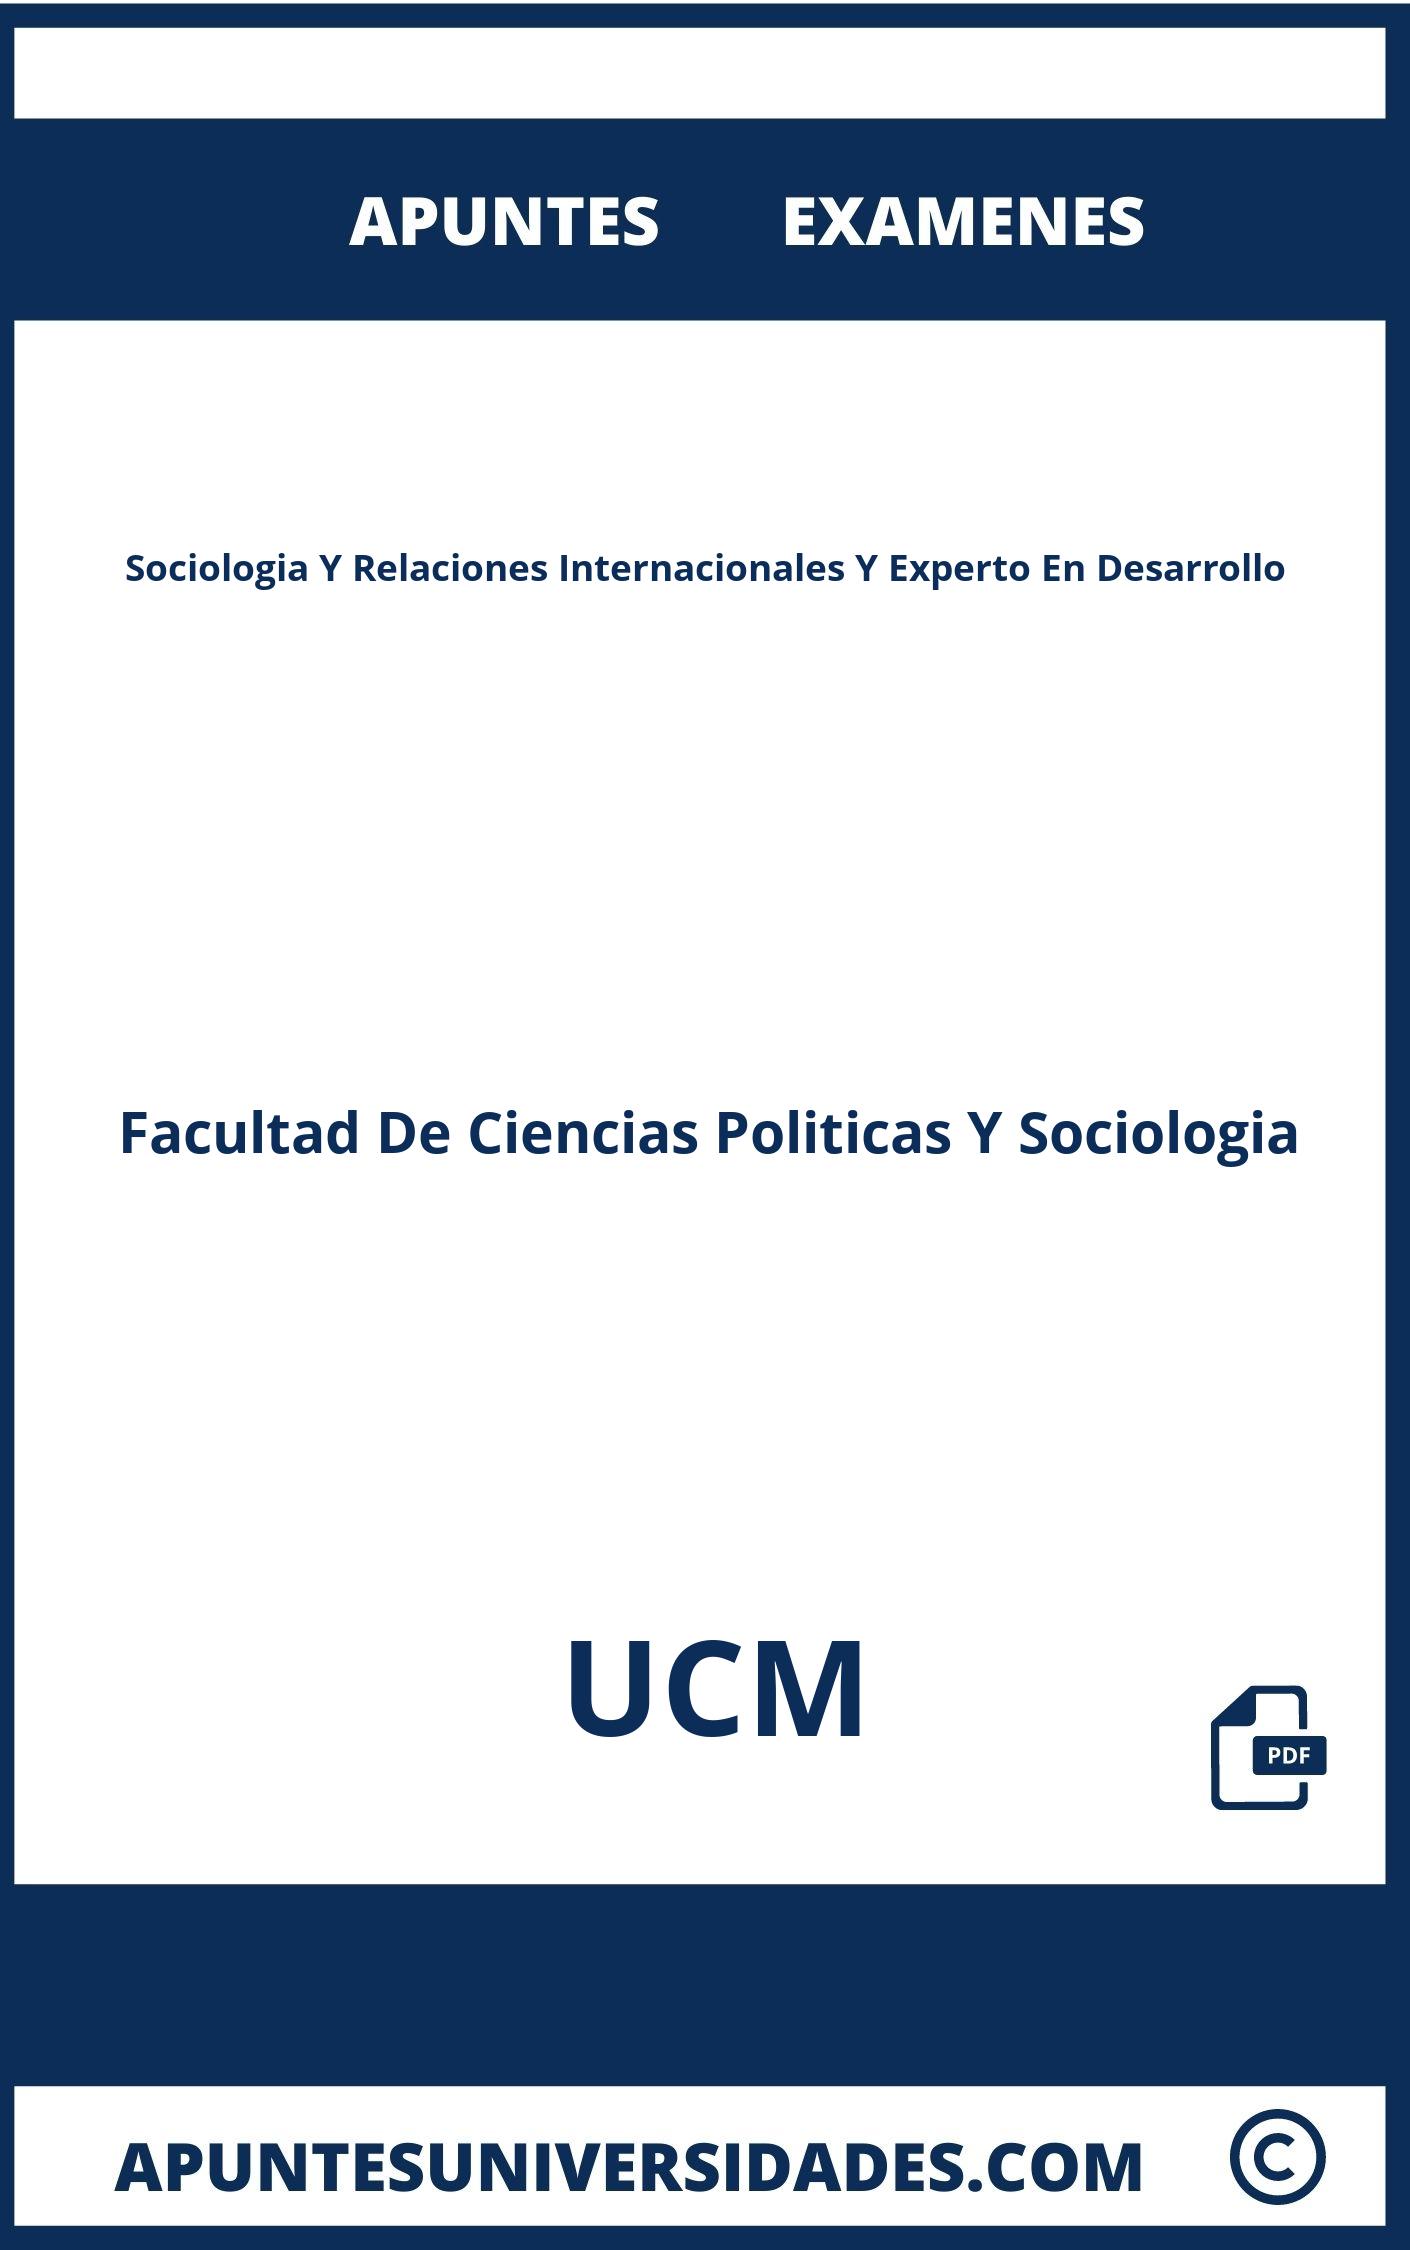 Examenes y Apuntes Sociologia Y Relaciones Internacionales Y Experto En Desarrollo UCM